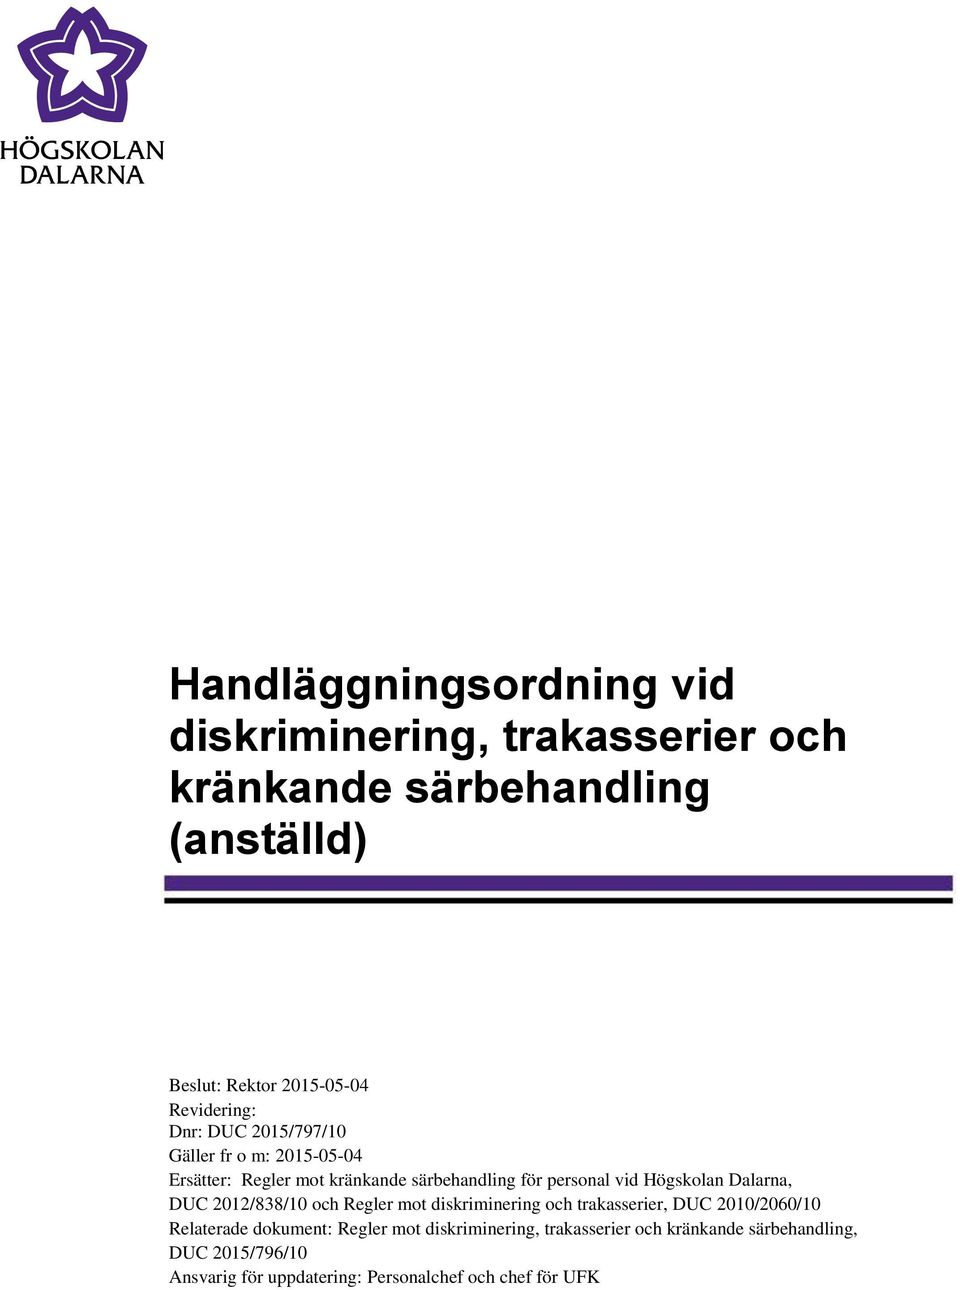 Högskolan Dalarna, DUC 2012/838/10 och Regler mot diskriminering och trakasserier, DUC 2010/2060/10 Relaterade dokument: